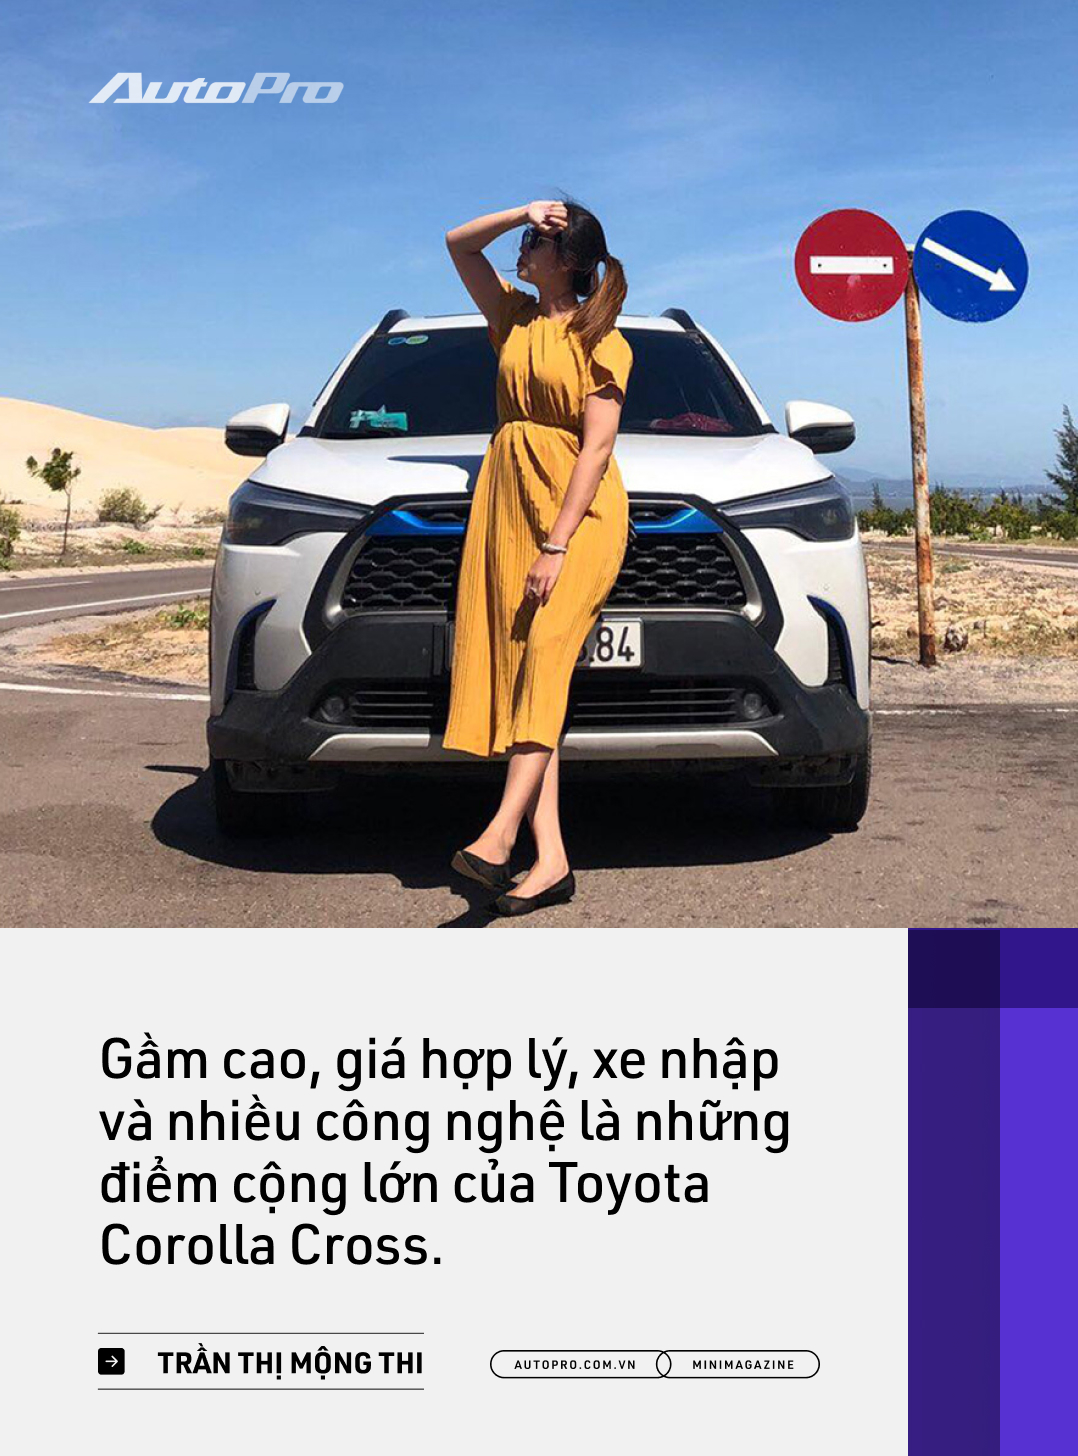 Những kiểu khách chốt đơn Toyota Corolla Cross sau 1 năm bán tại Việt Nam: Người bỏ Mercedes, người mua chỉ vì thương hiệu - Ảnh 3.